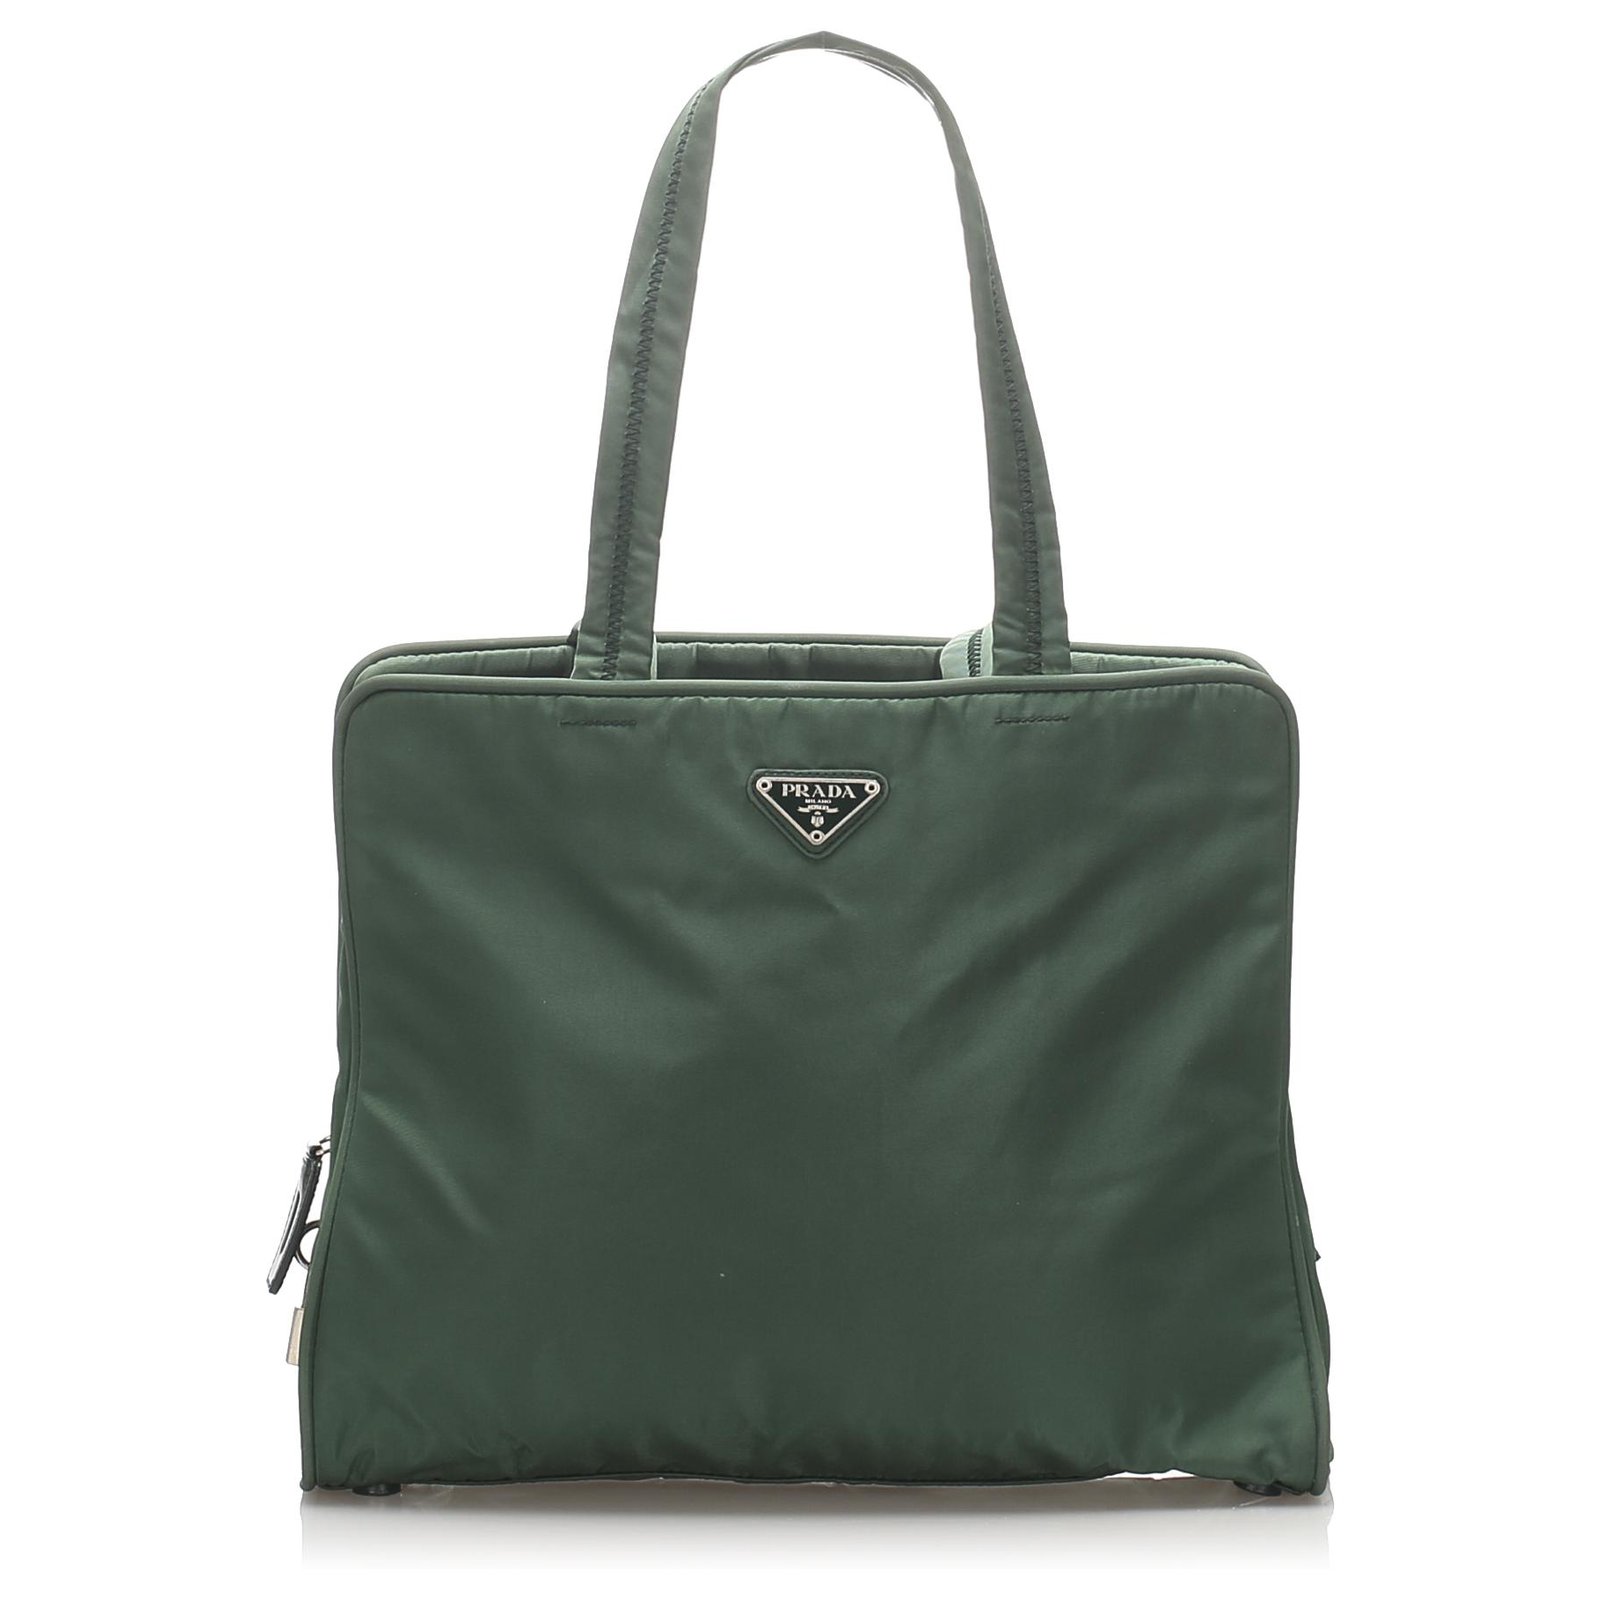 Prada, Bags, Vintage Green Prada Bag